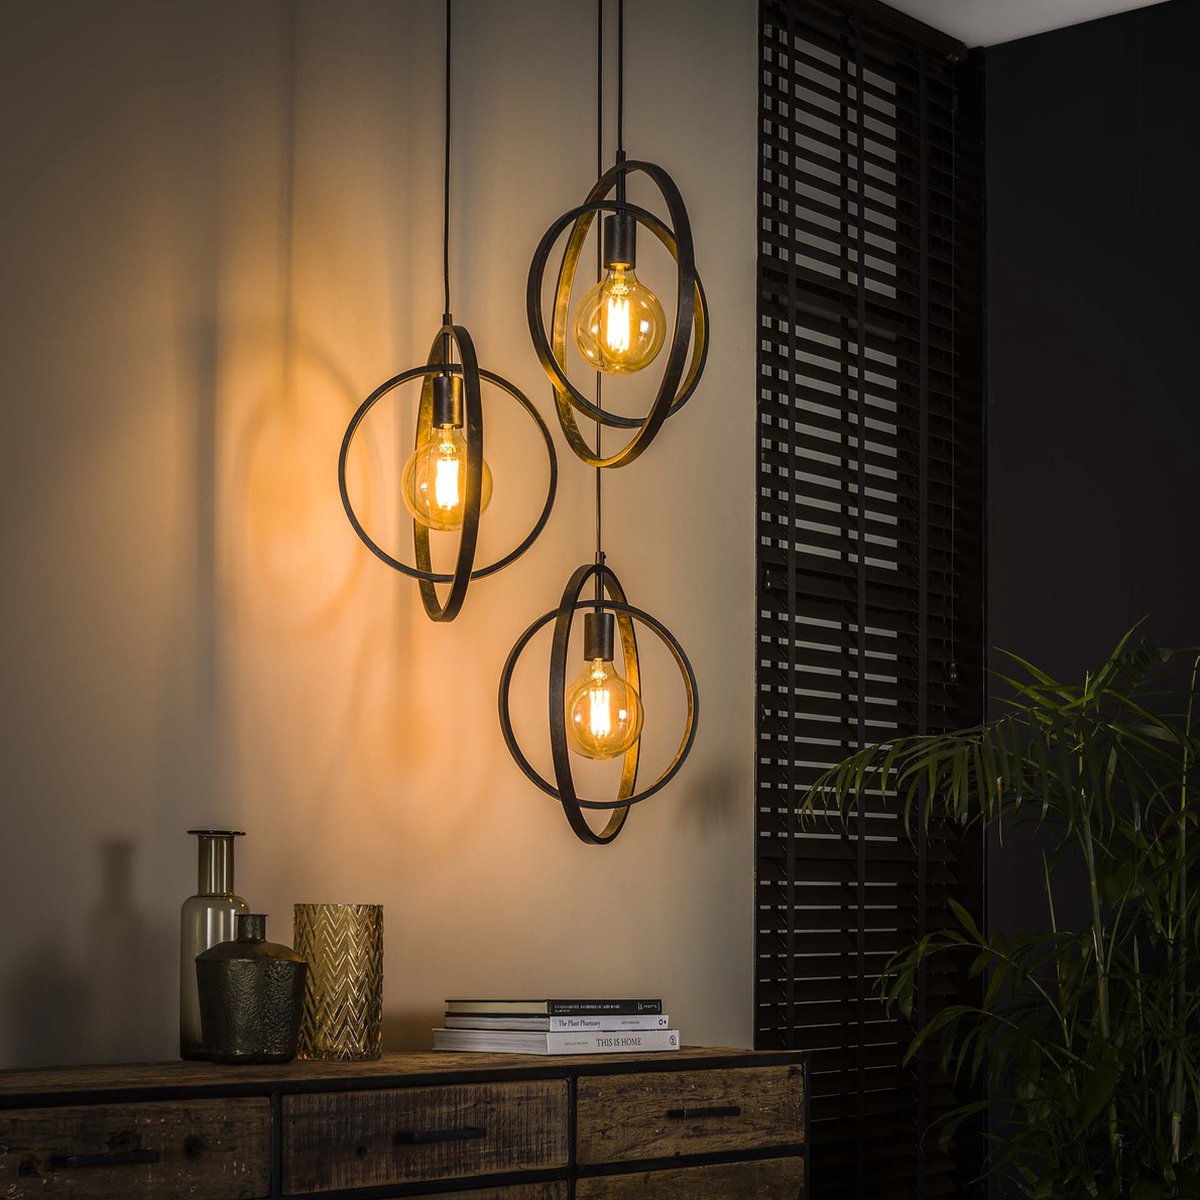 Hanglamp Turn Around getrapt charcoal | 3 lichts | ø 40 cm | in hoogte verstelbaar tot 150 cm | industrieel / modern design | eetkamer / woonkamer | metaal